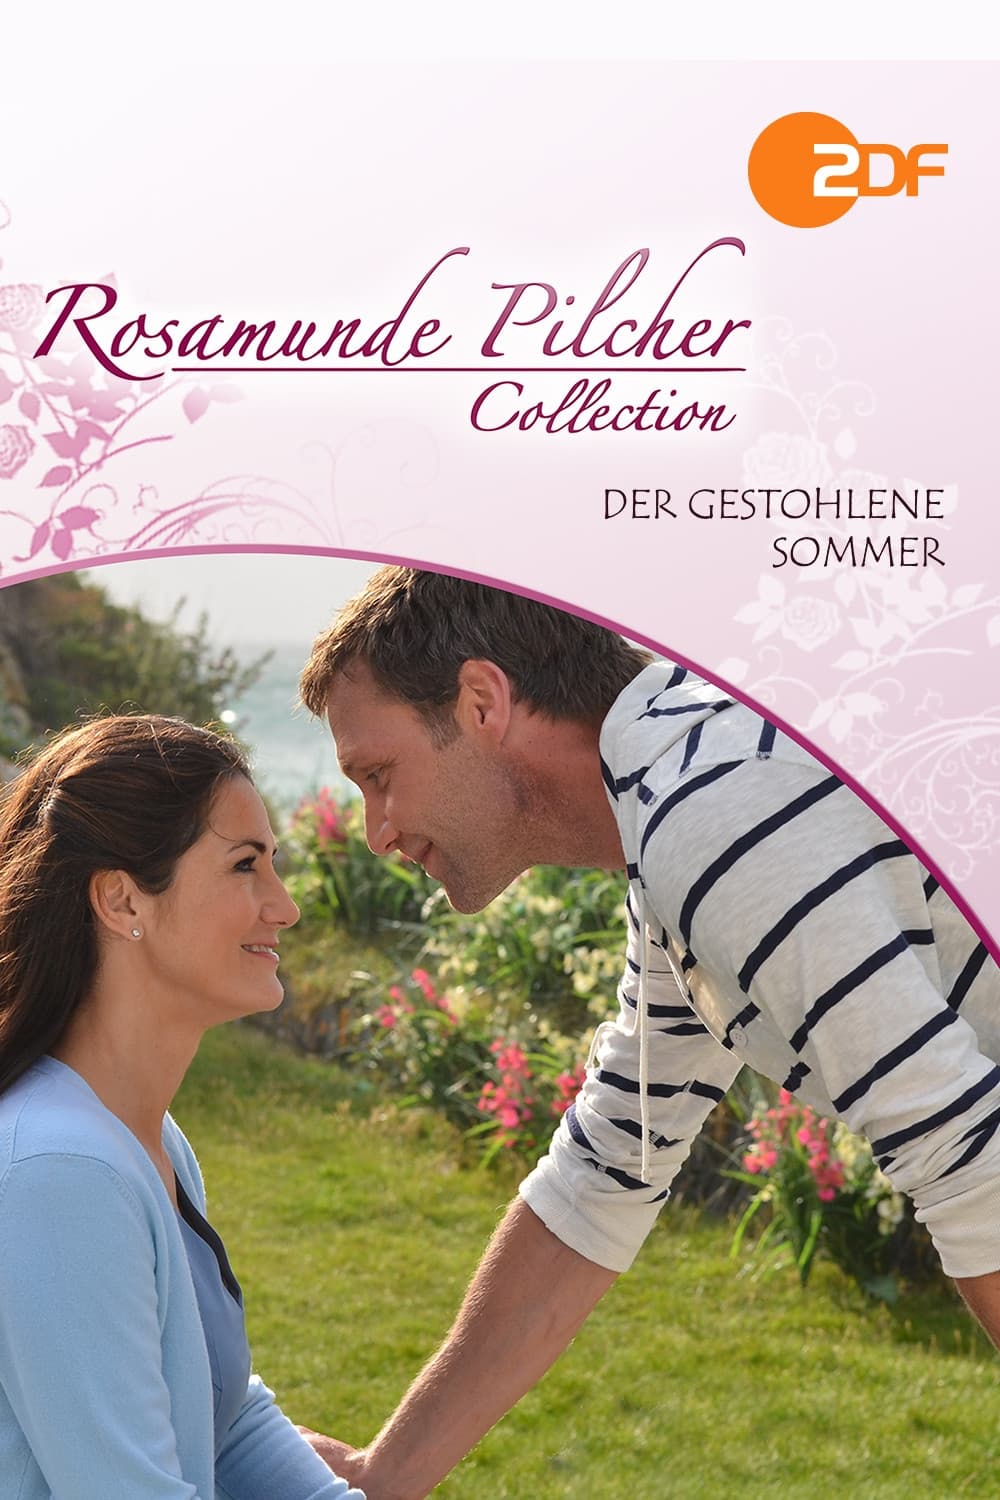 Rosamunde Pilcher - Der gestohlene Sommer (2011)